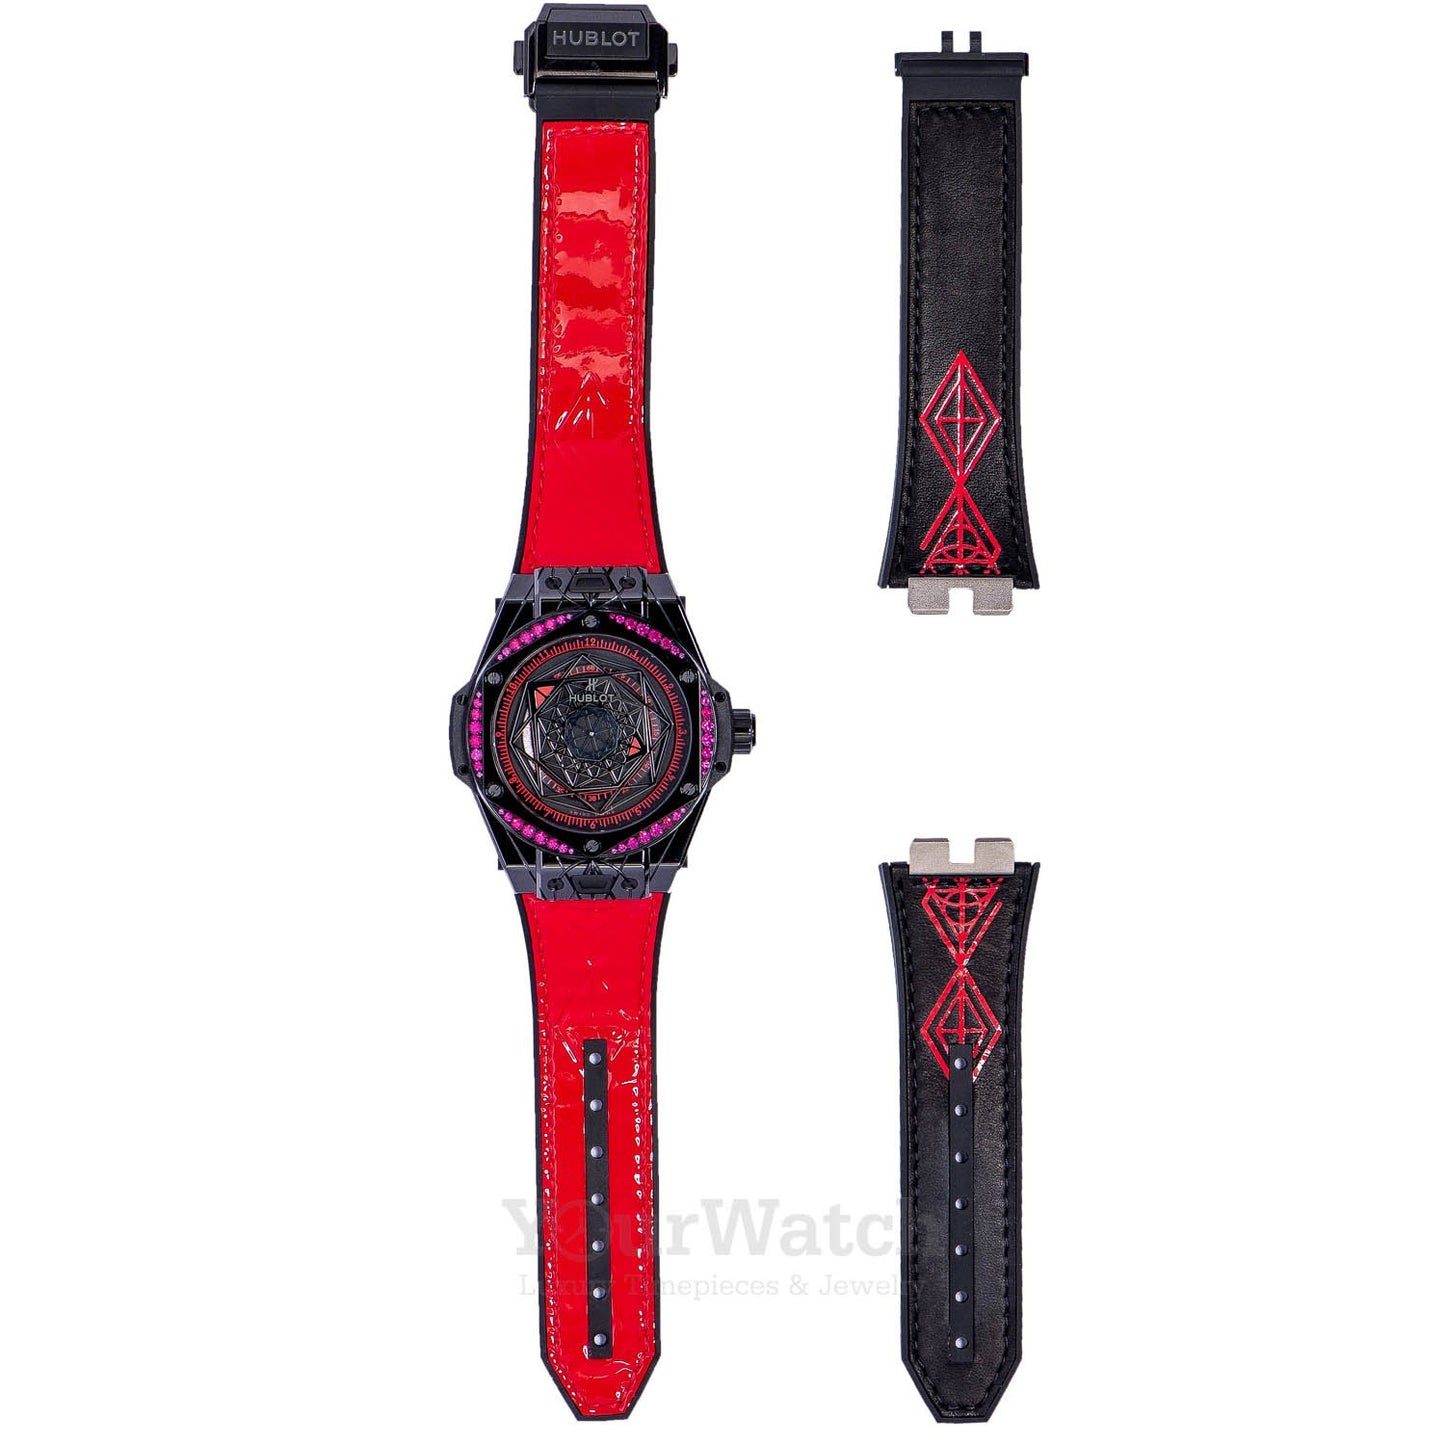 Hublot Big Bang Sang Bleu All Black Red 39mm Ladies's Watch 465.CS.1119.VR.1202.MXM18 